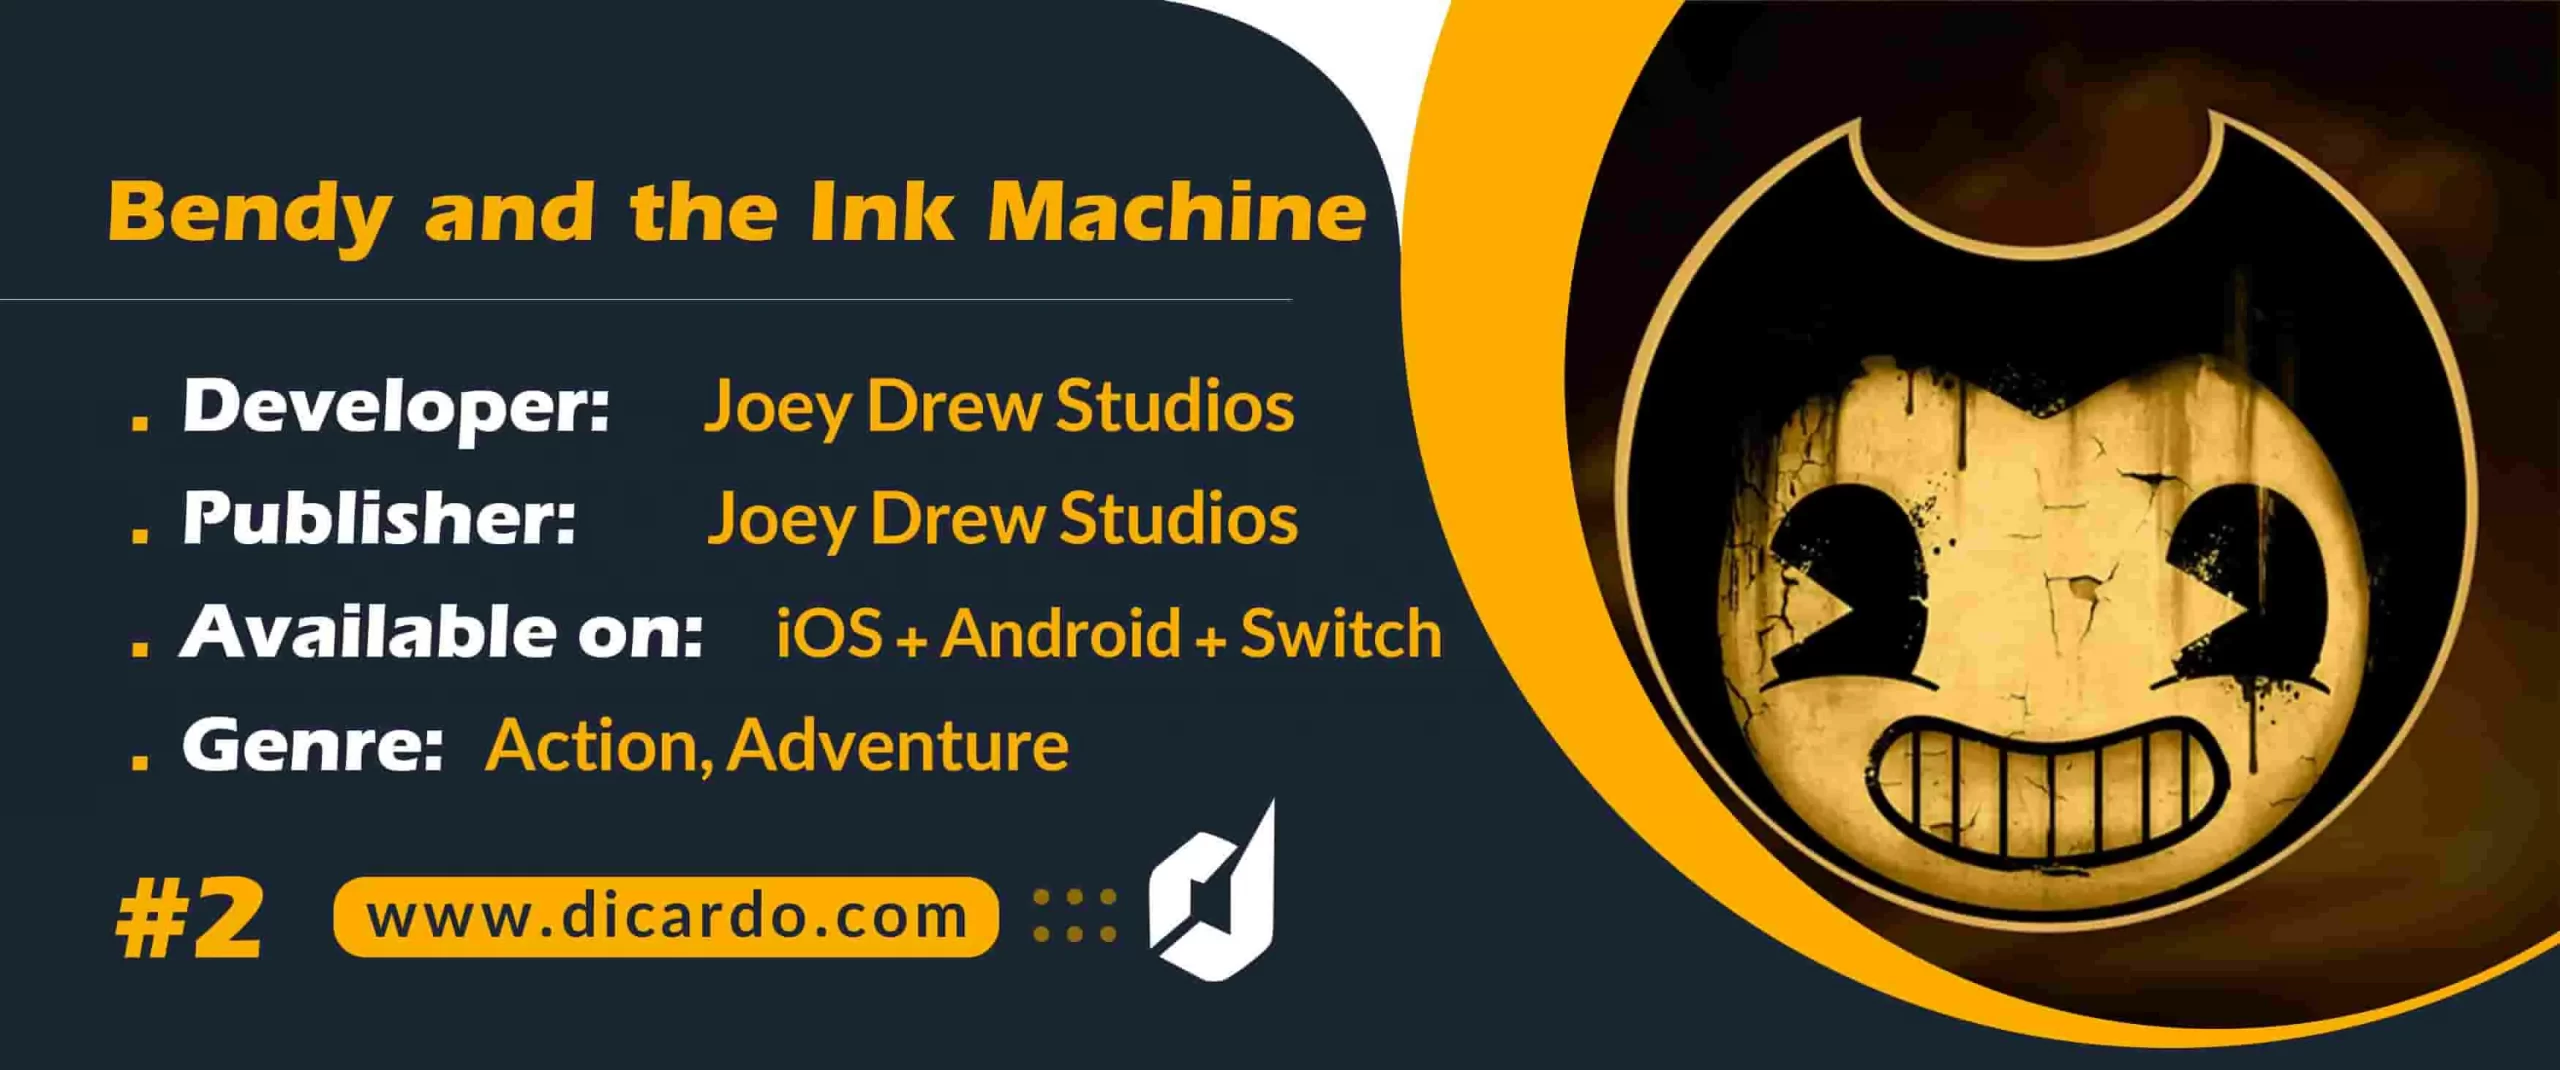 بندی اند د اینک ماشین Bendy and the Ink Machine